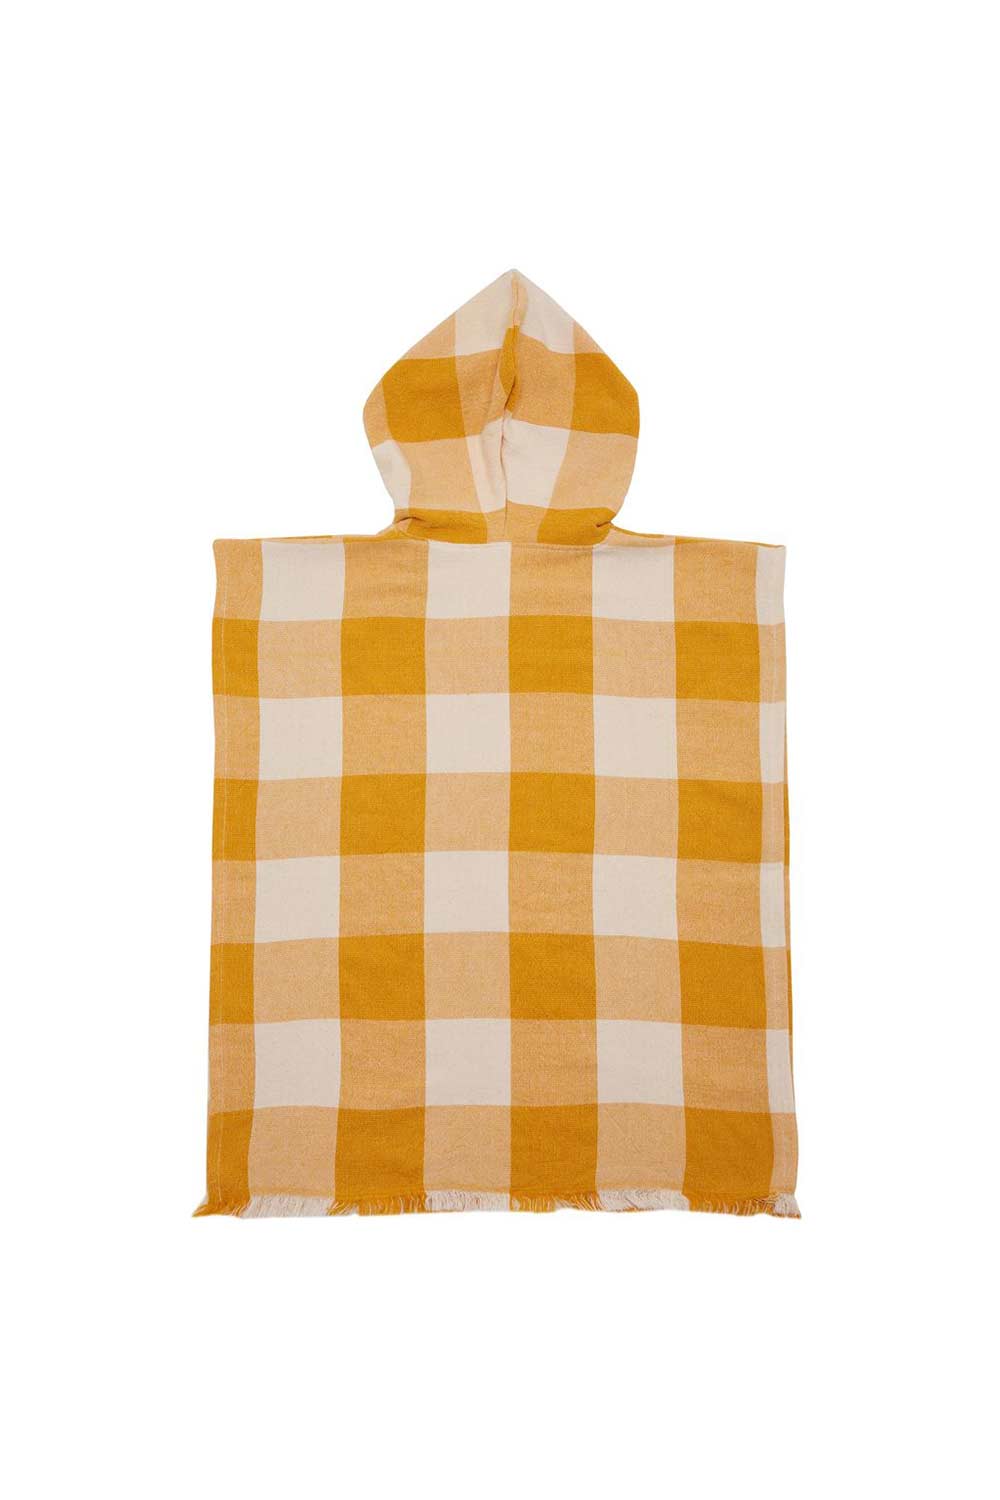 Shop Mayde | Mayde Tots Sunshine Ponch Towel - Mustard